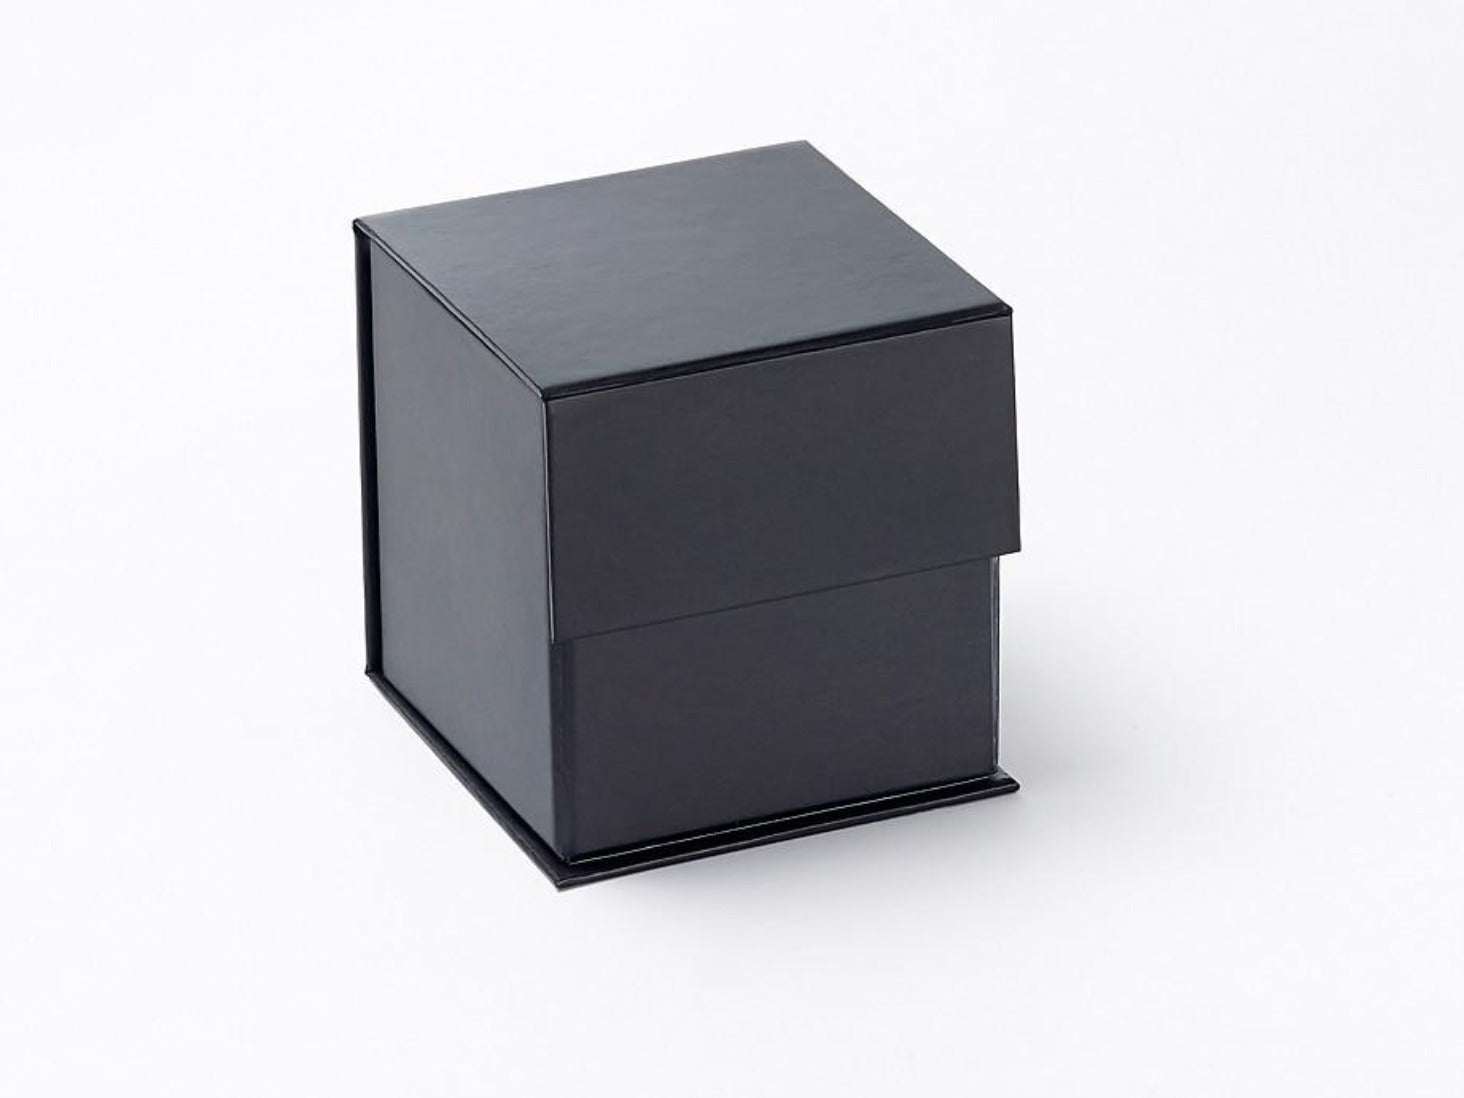 Small 4" Black Cube Folding Gift Box from Foldabox USA